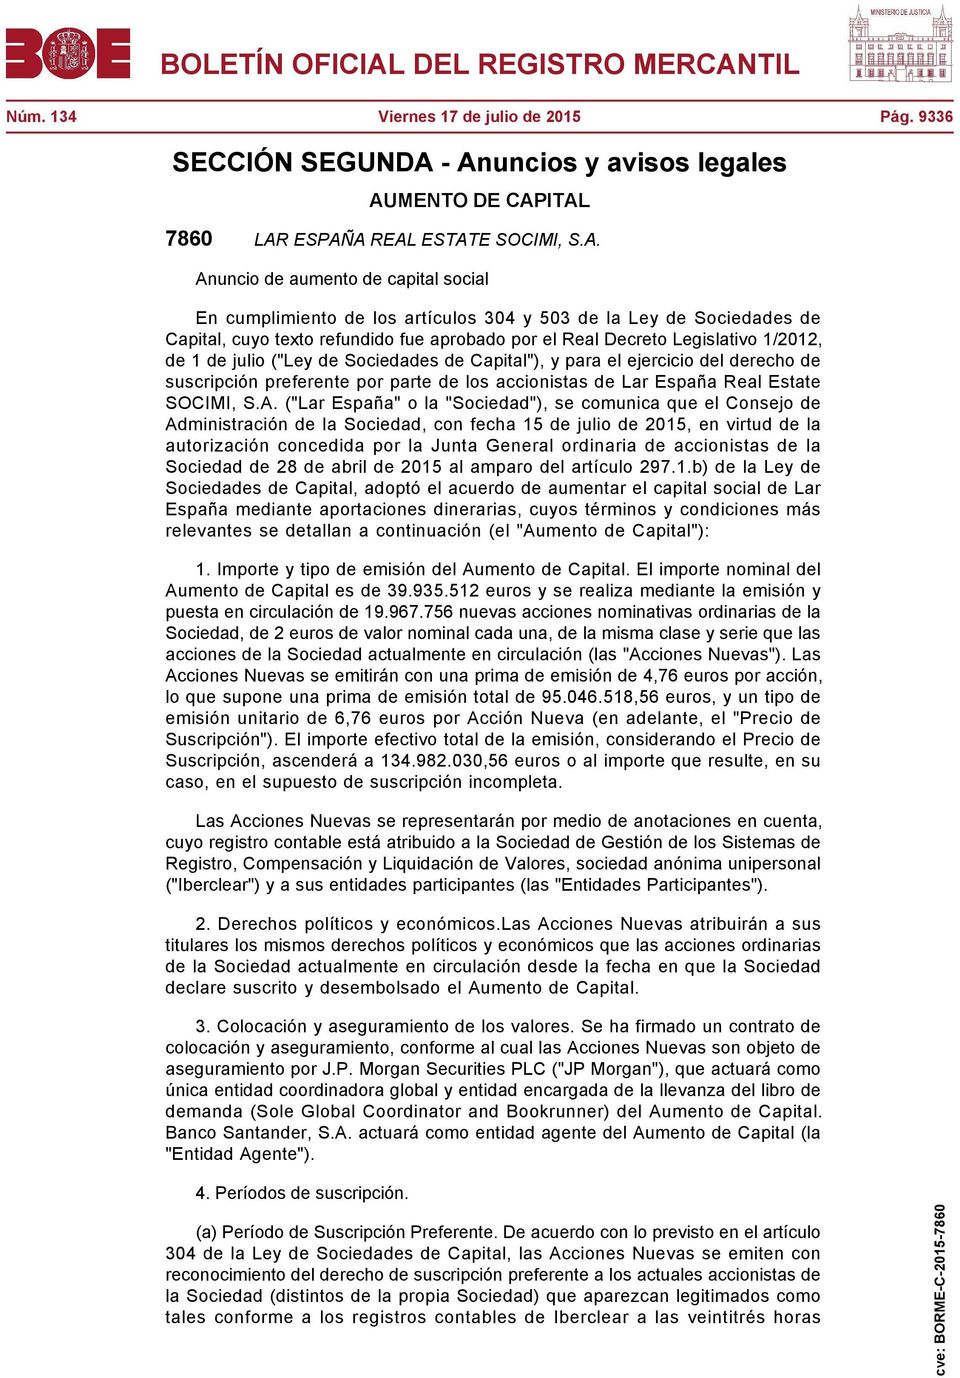 Capital, cuyo texto refundido fue aprobado por el Real Decreto Legislativo 1/2012, de 1 de julio ("Ley de Sociedades de Capital"), y para el ejercicio del derecho de suscripción preferente por parte